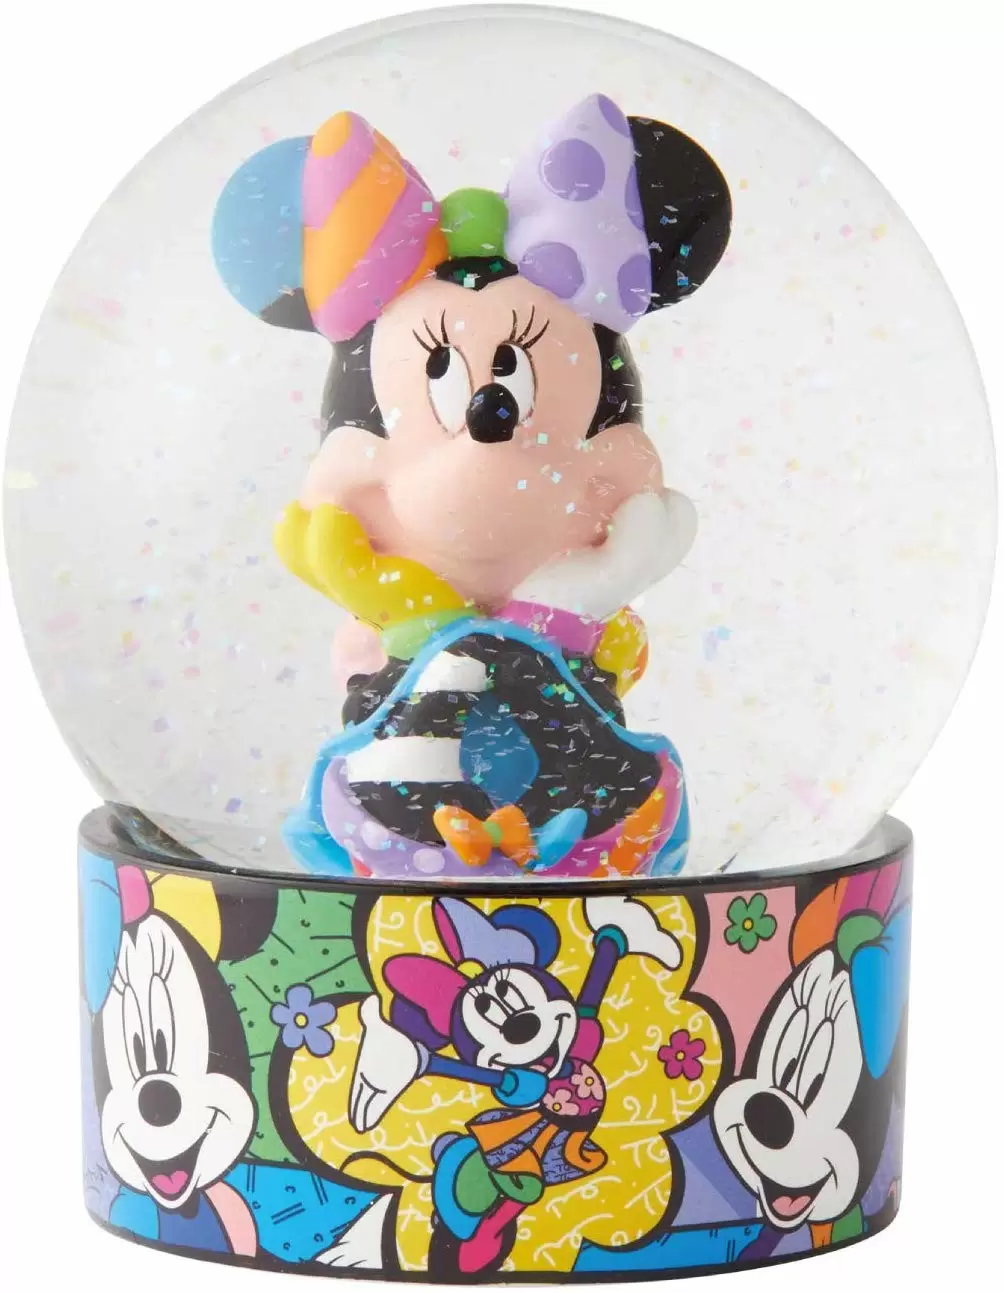 Britto - Disney by Romero Britto - Minnie Mouse Waterball